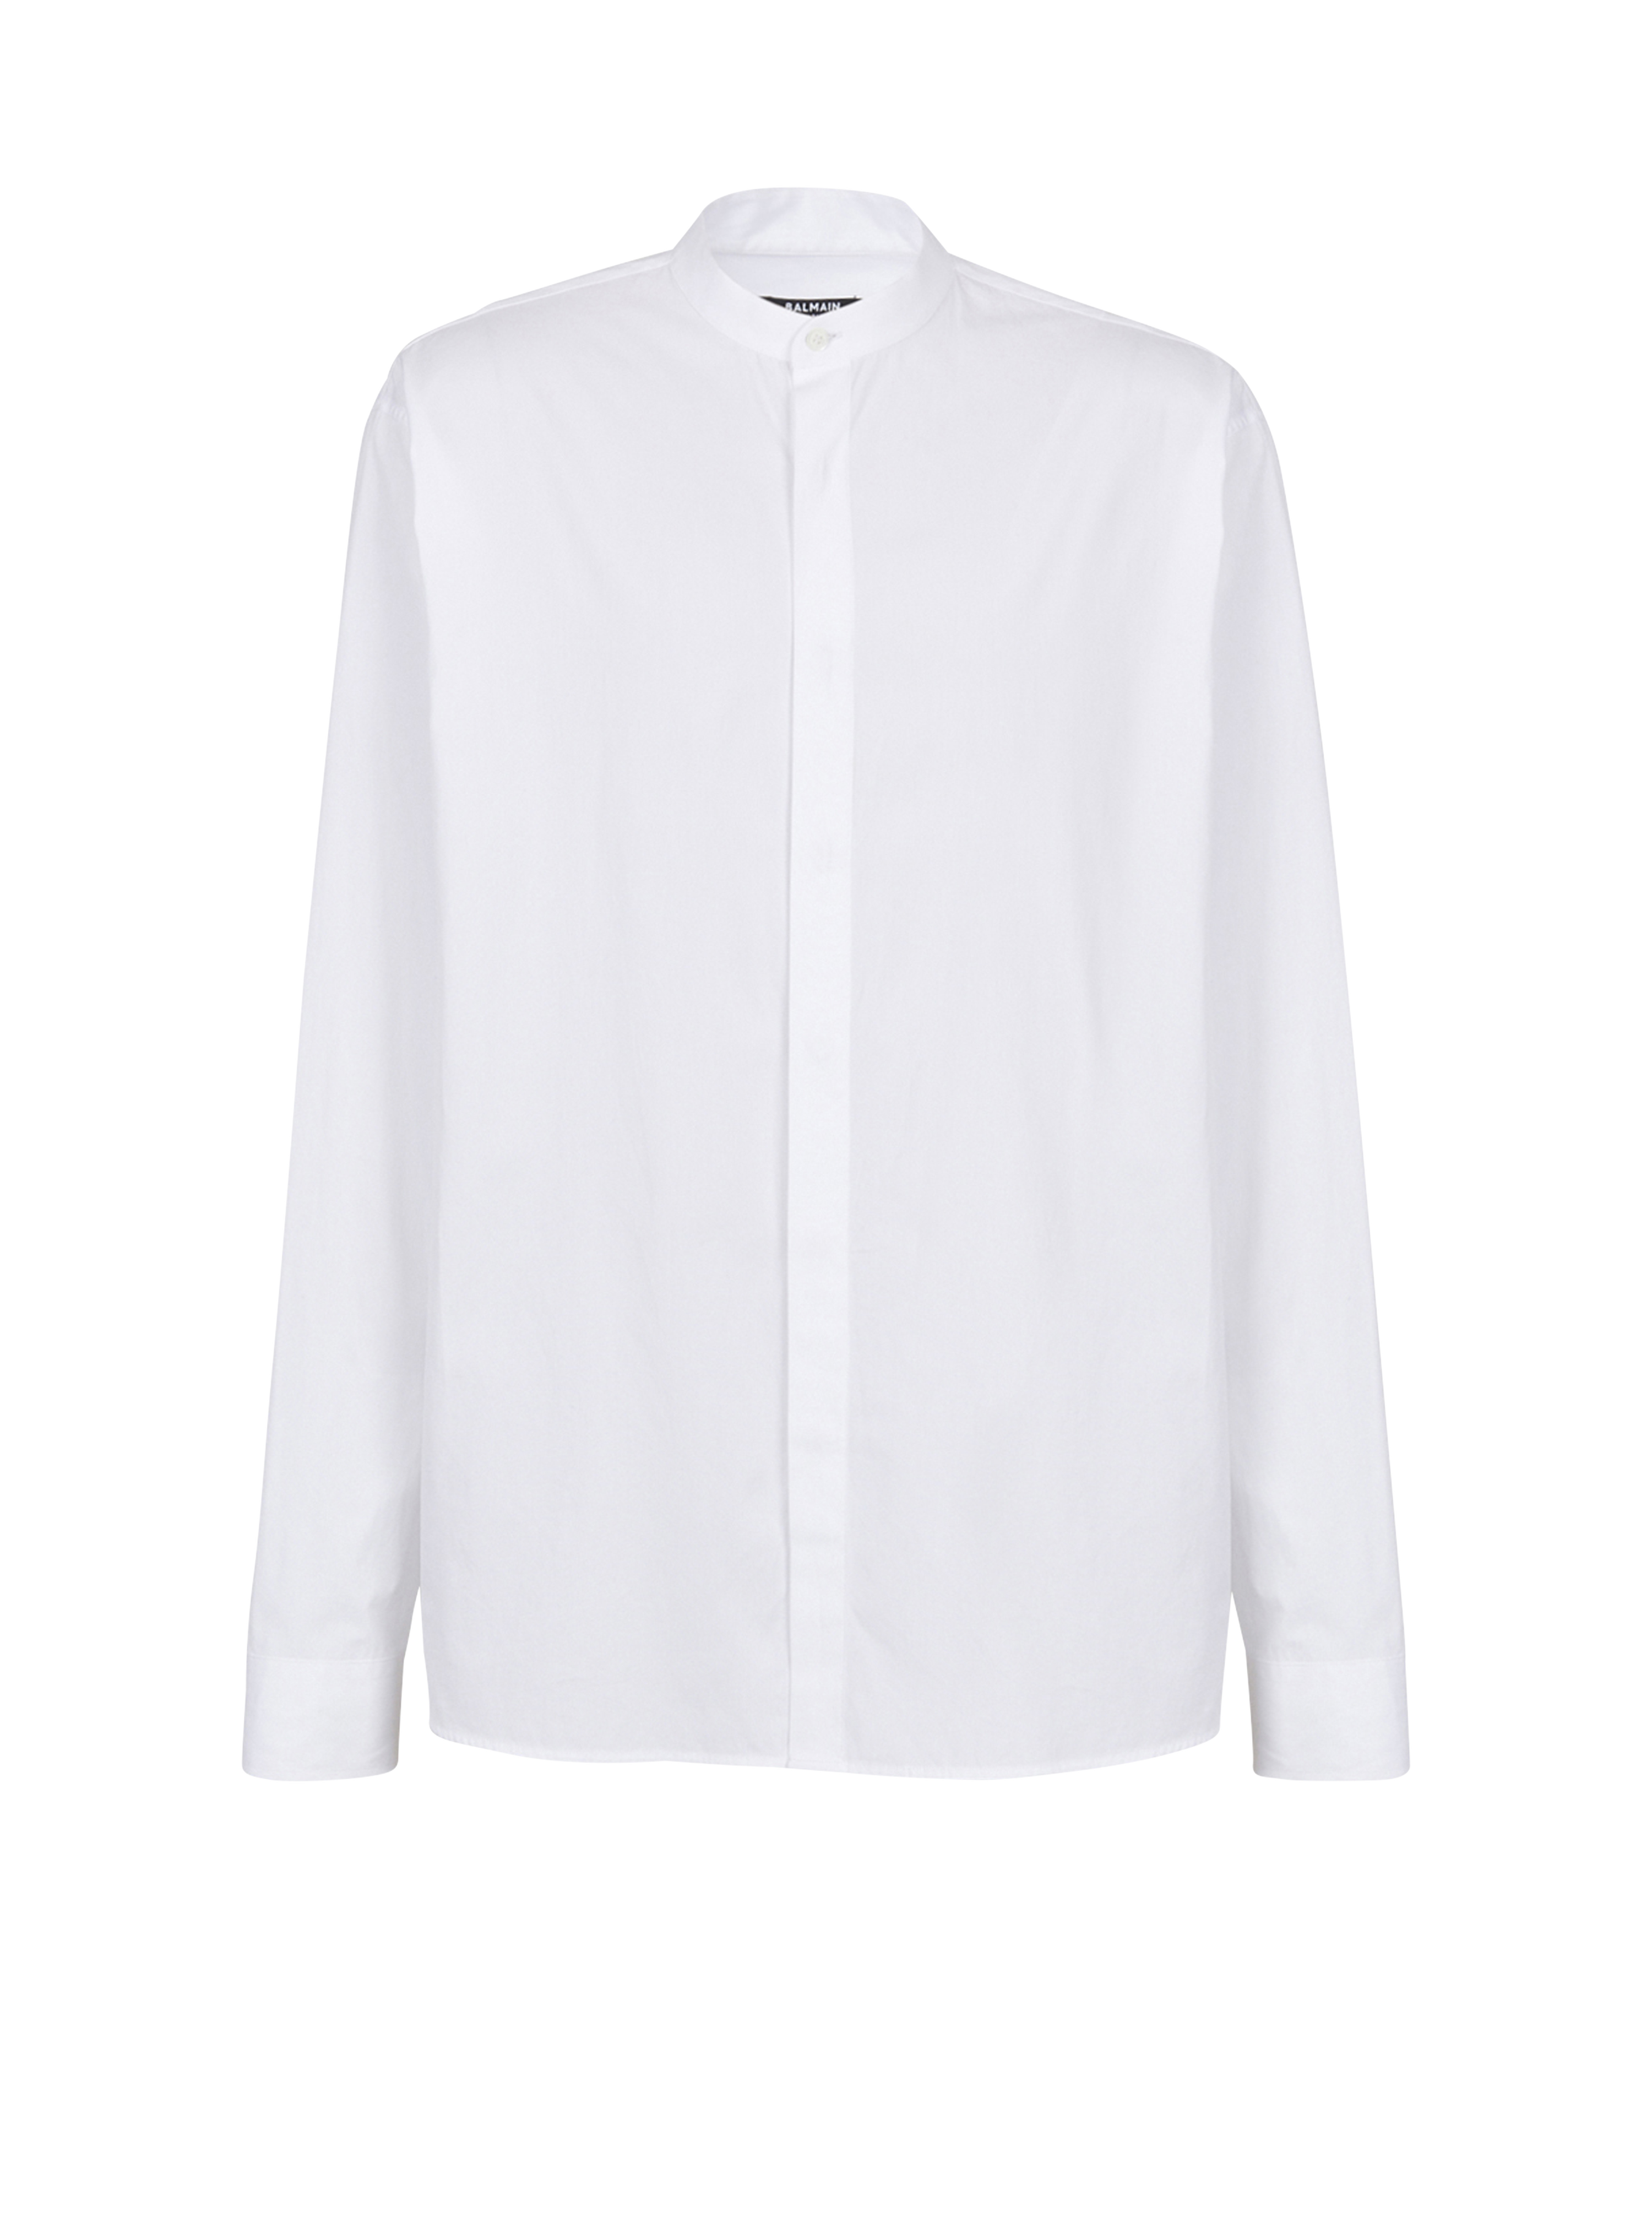 Camisa de algodón, blanco